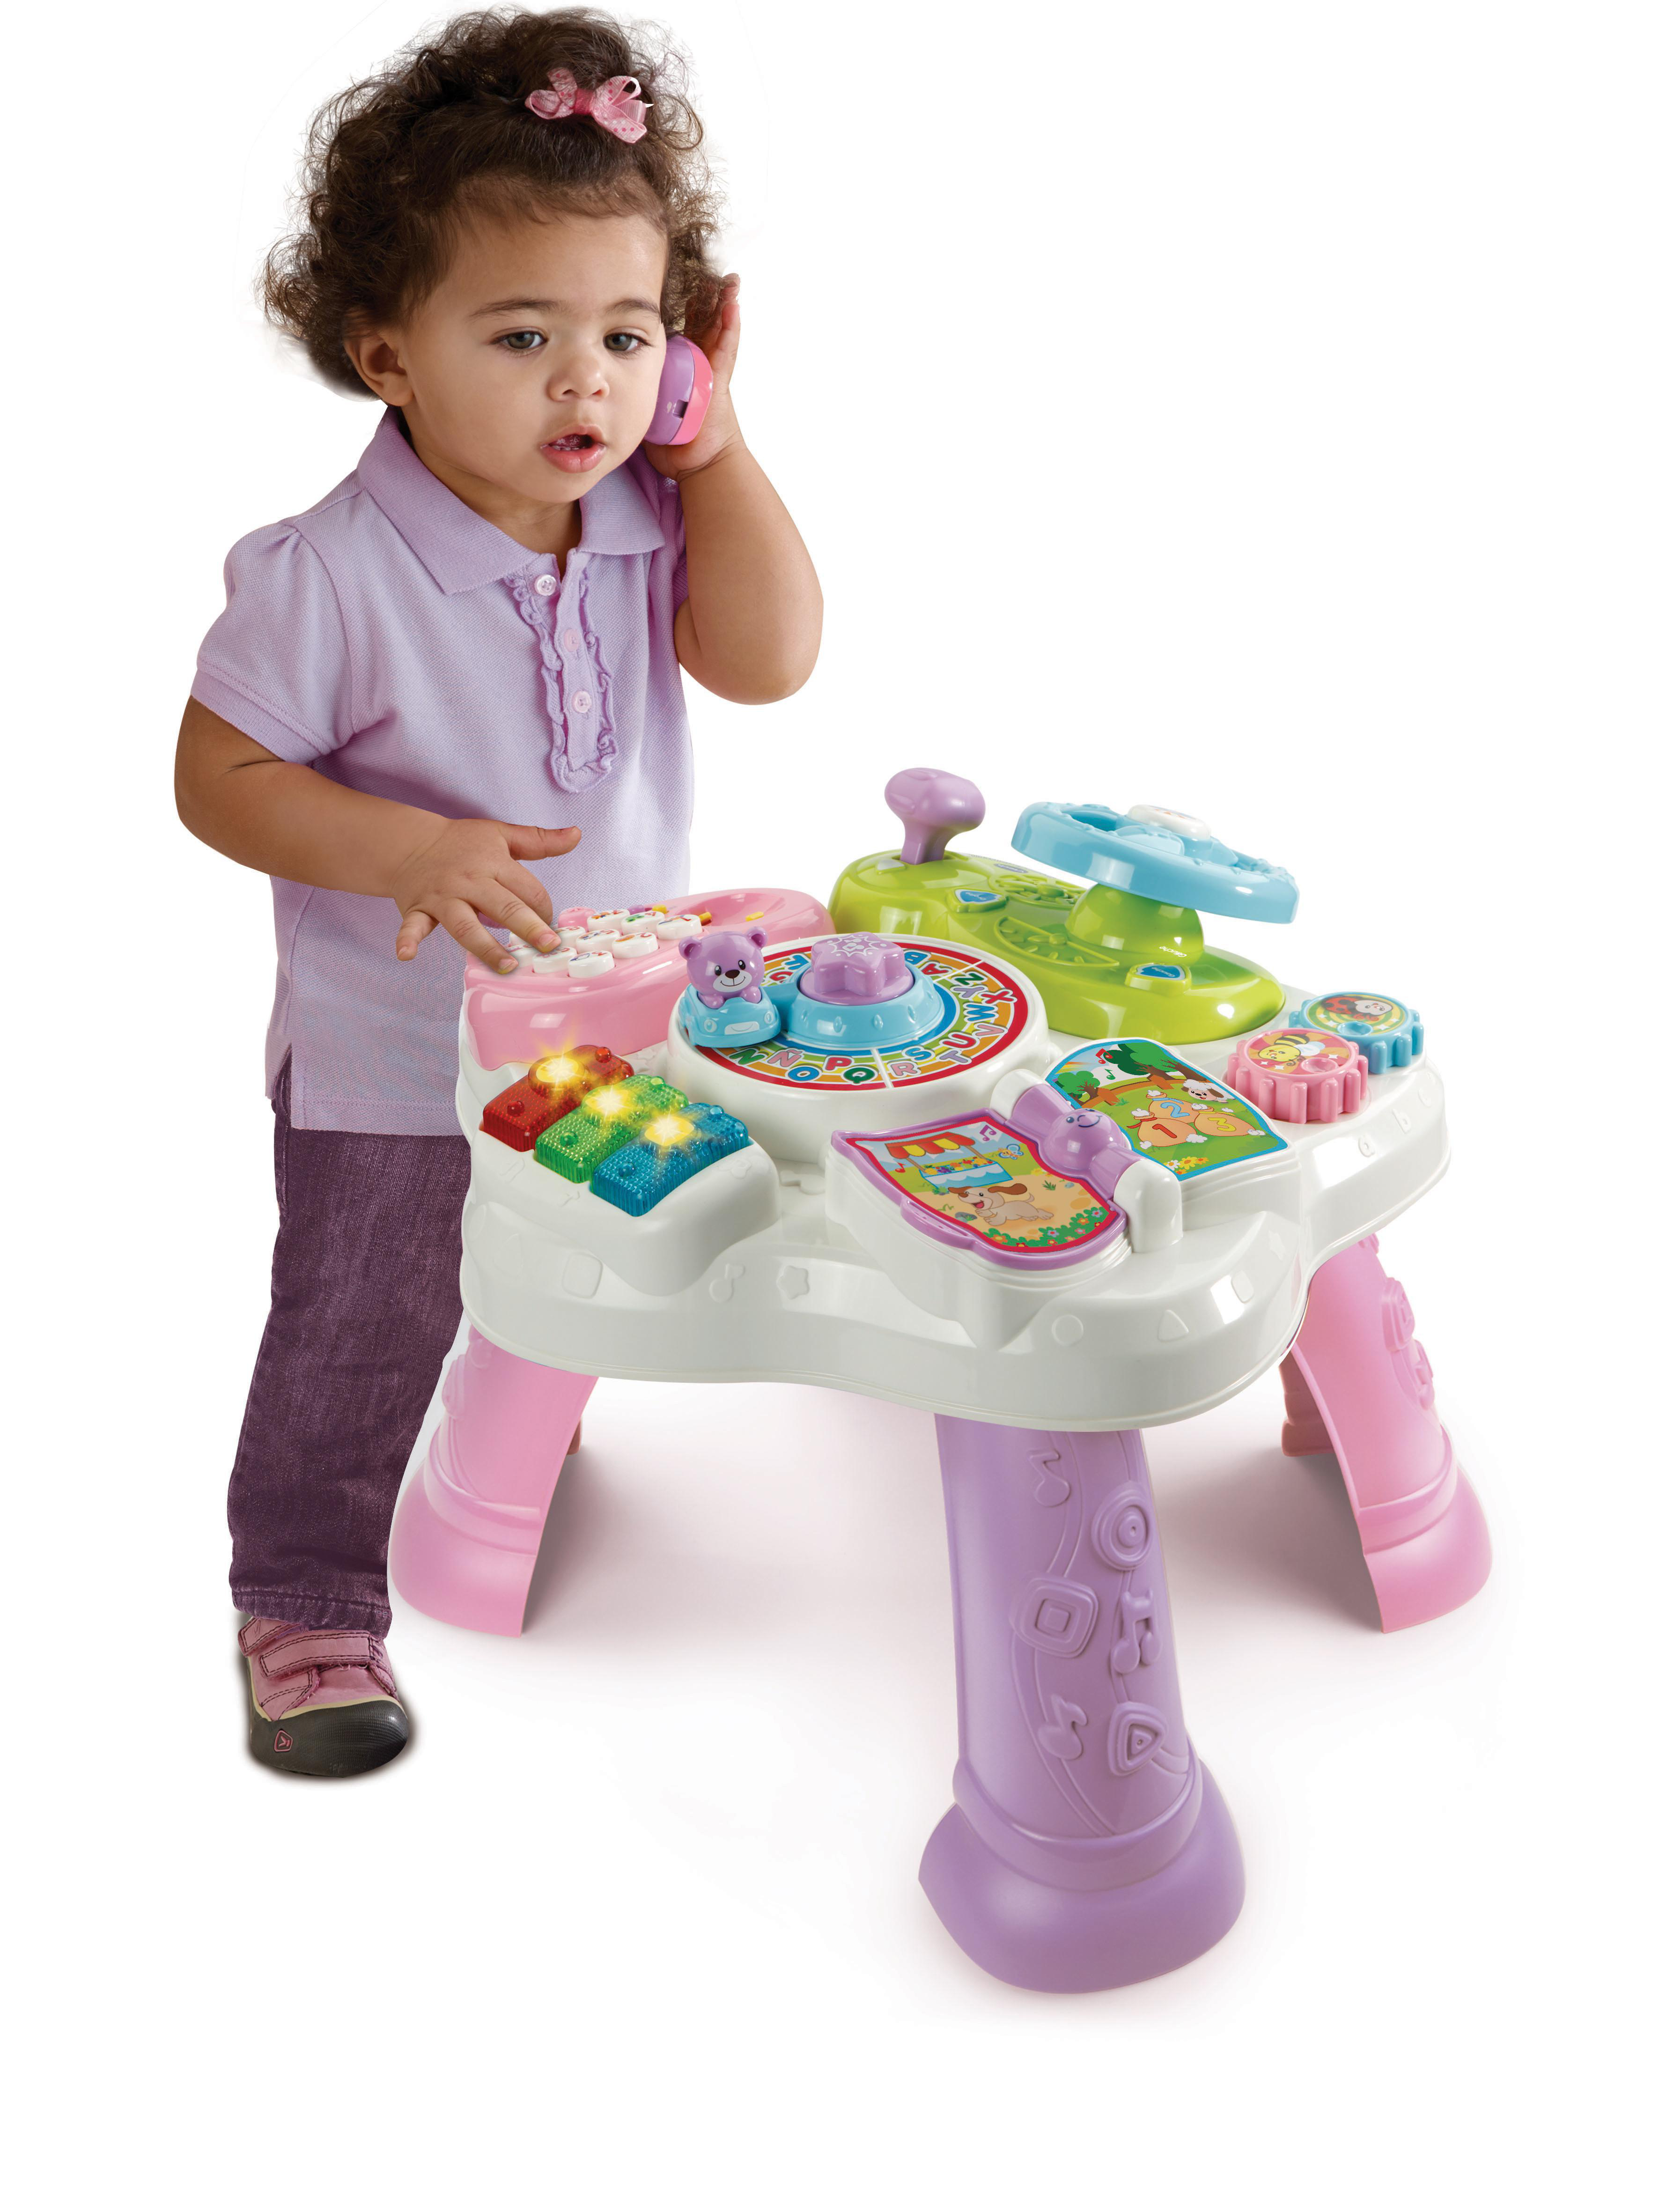 Kleinkindspieltisch, Mehrfarbig pink Spieltisch VTECH Abenteuer